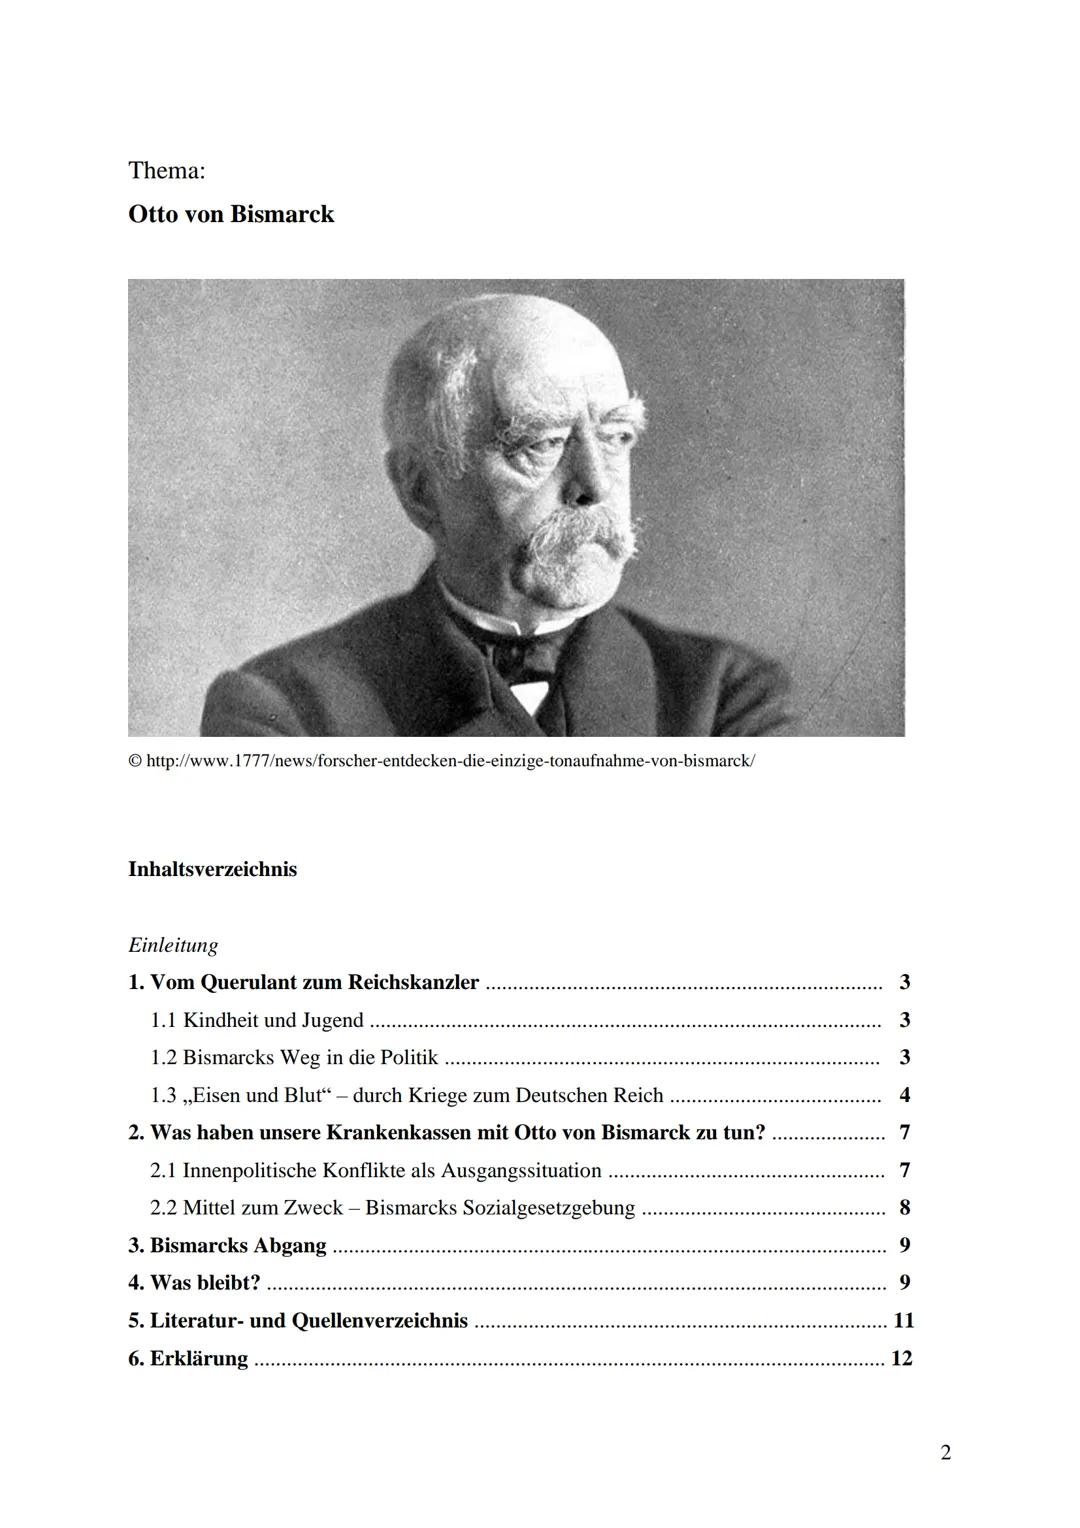 Thema der Arbeit:
Gehasst und verehrt:
Otto von Bismarck
Unterrichtsfach: Geschichte
Lehrer:
XXX
Abgabetermin: XXX
Präsentation:
XXX Thema d